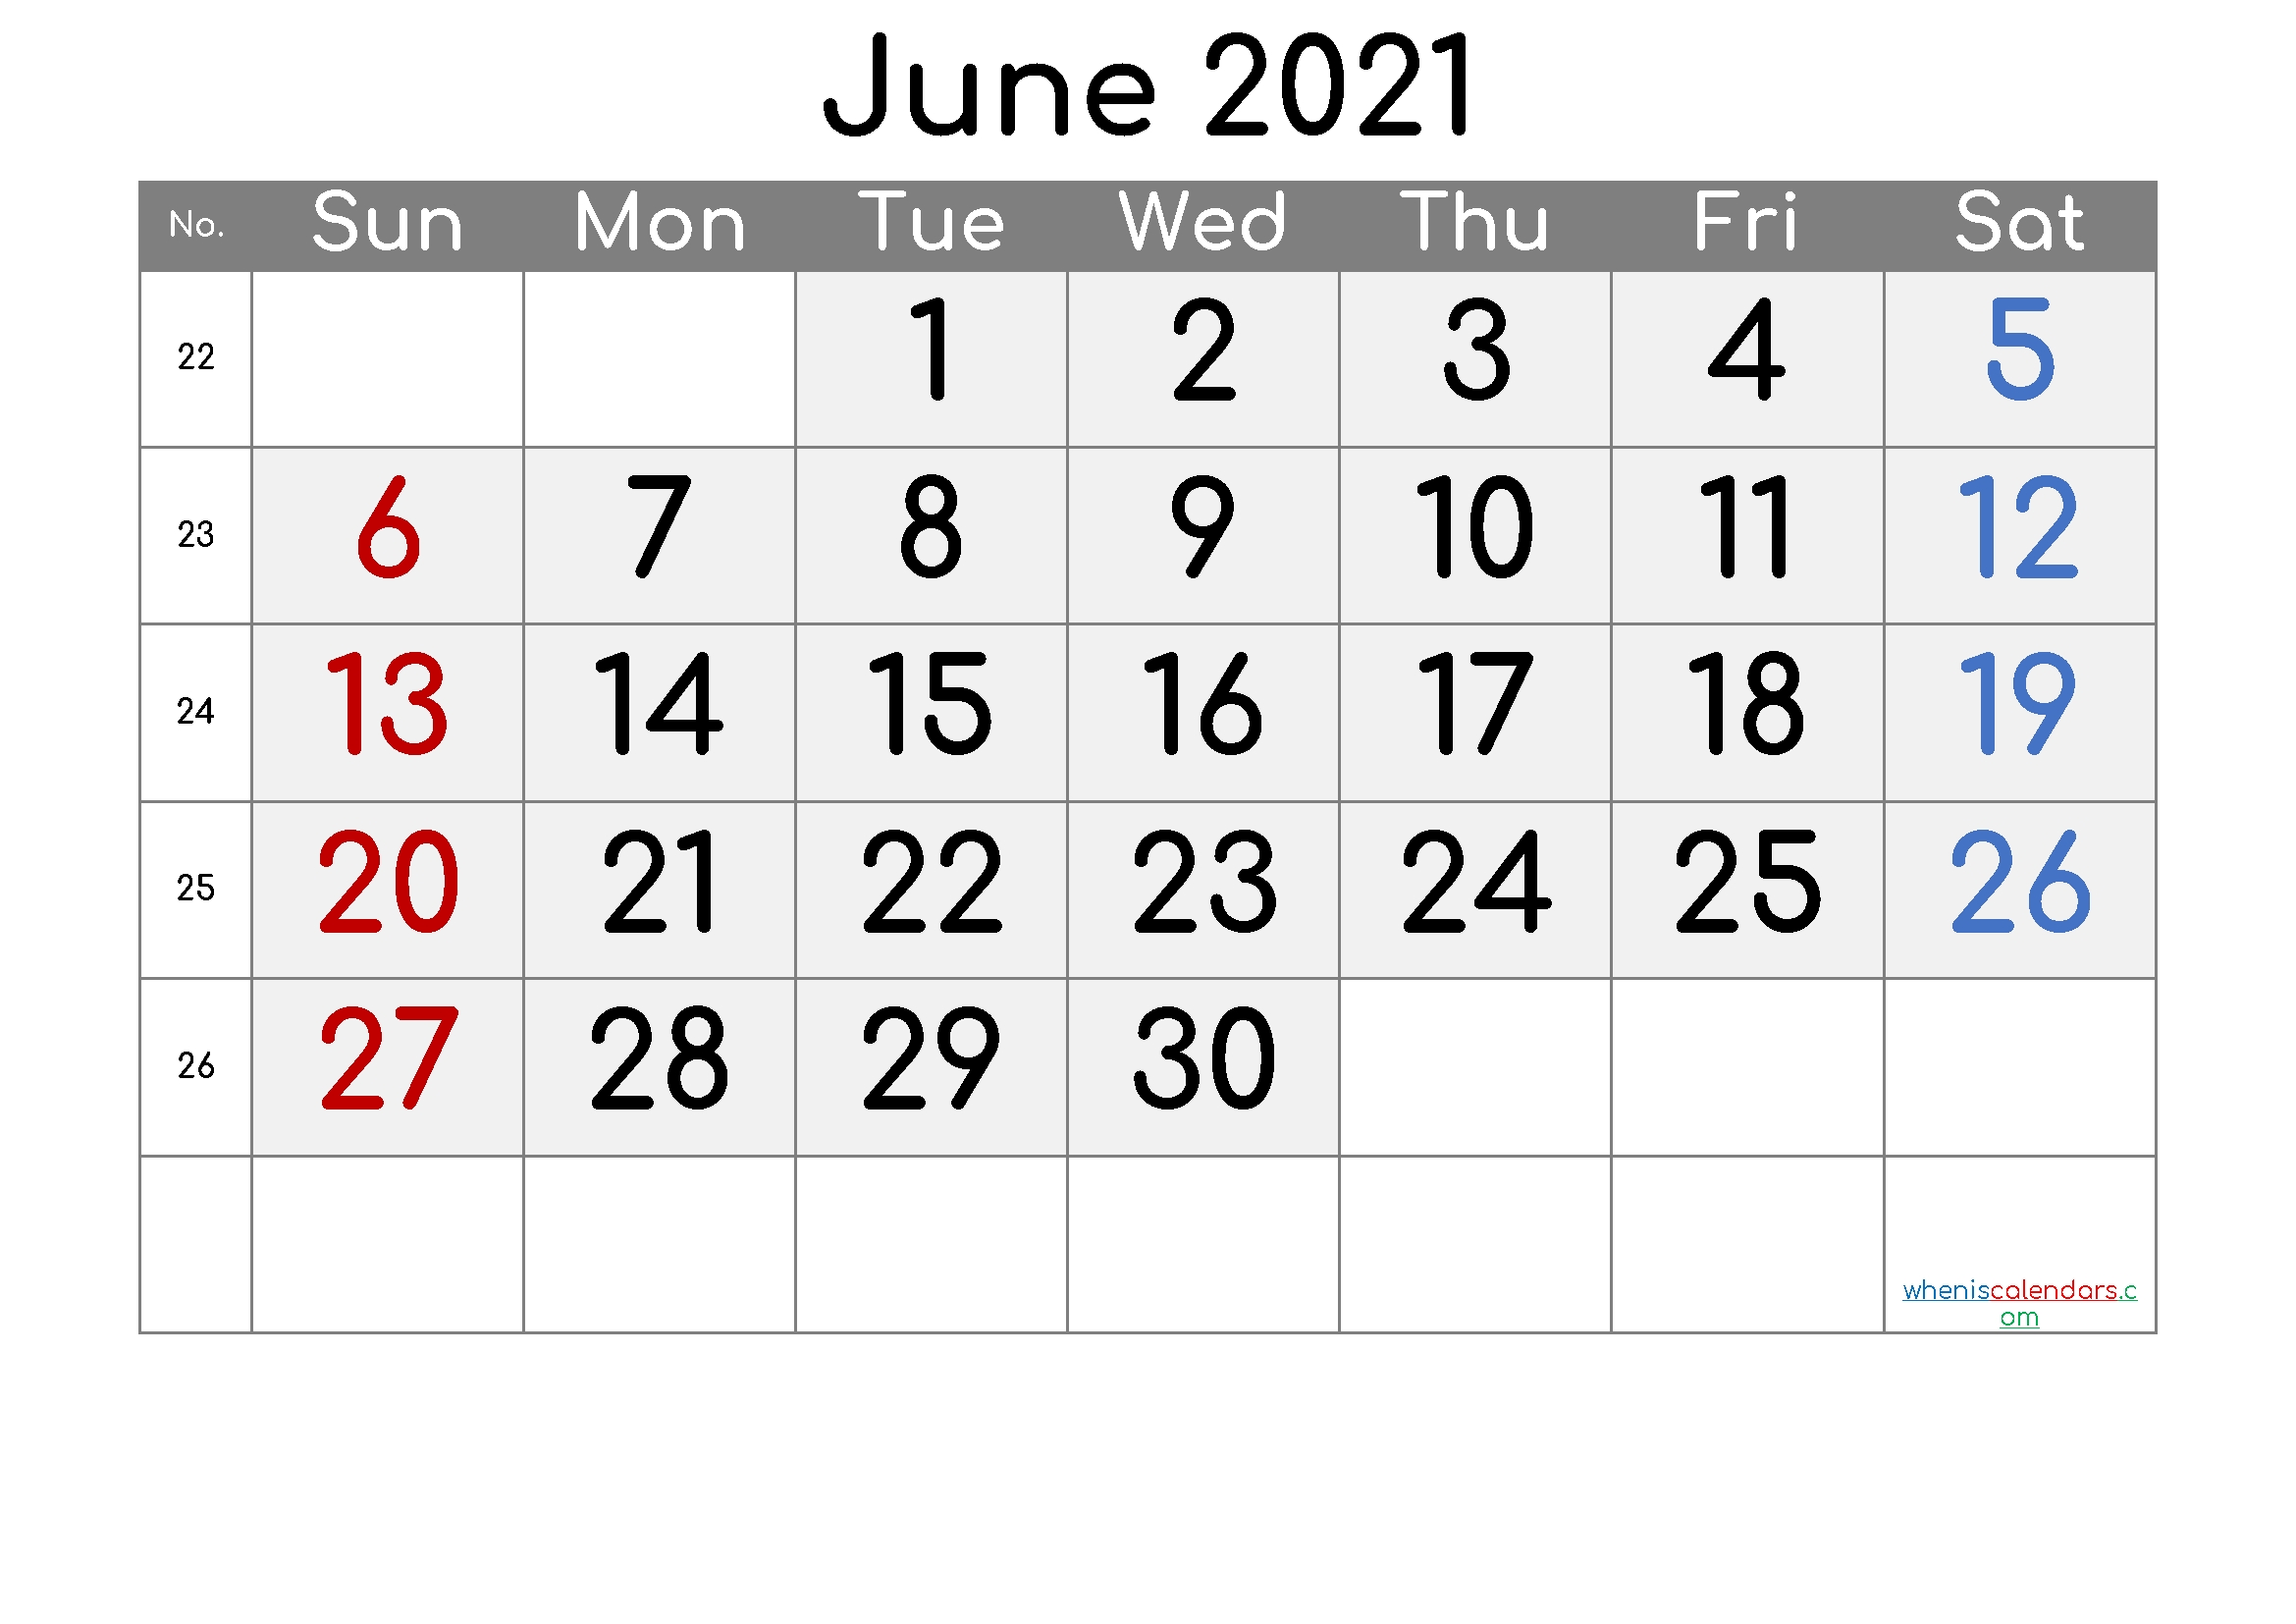 Get Calendar Weekly June 2021 Printable